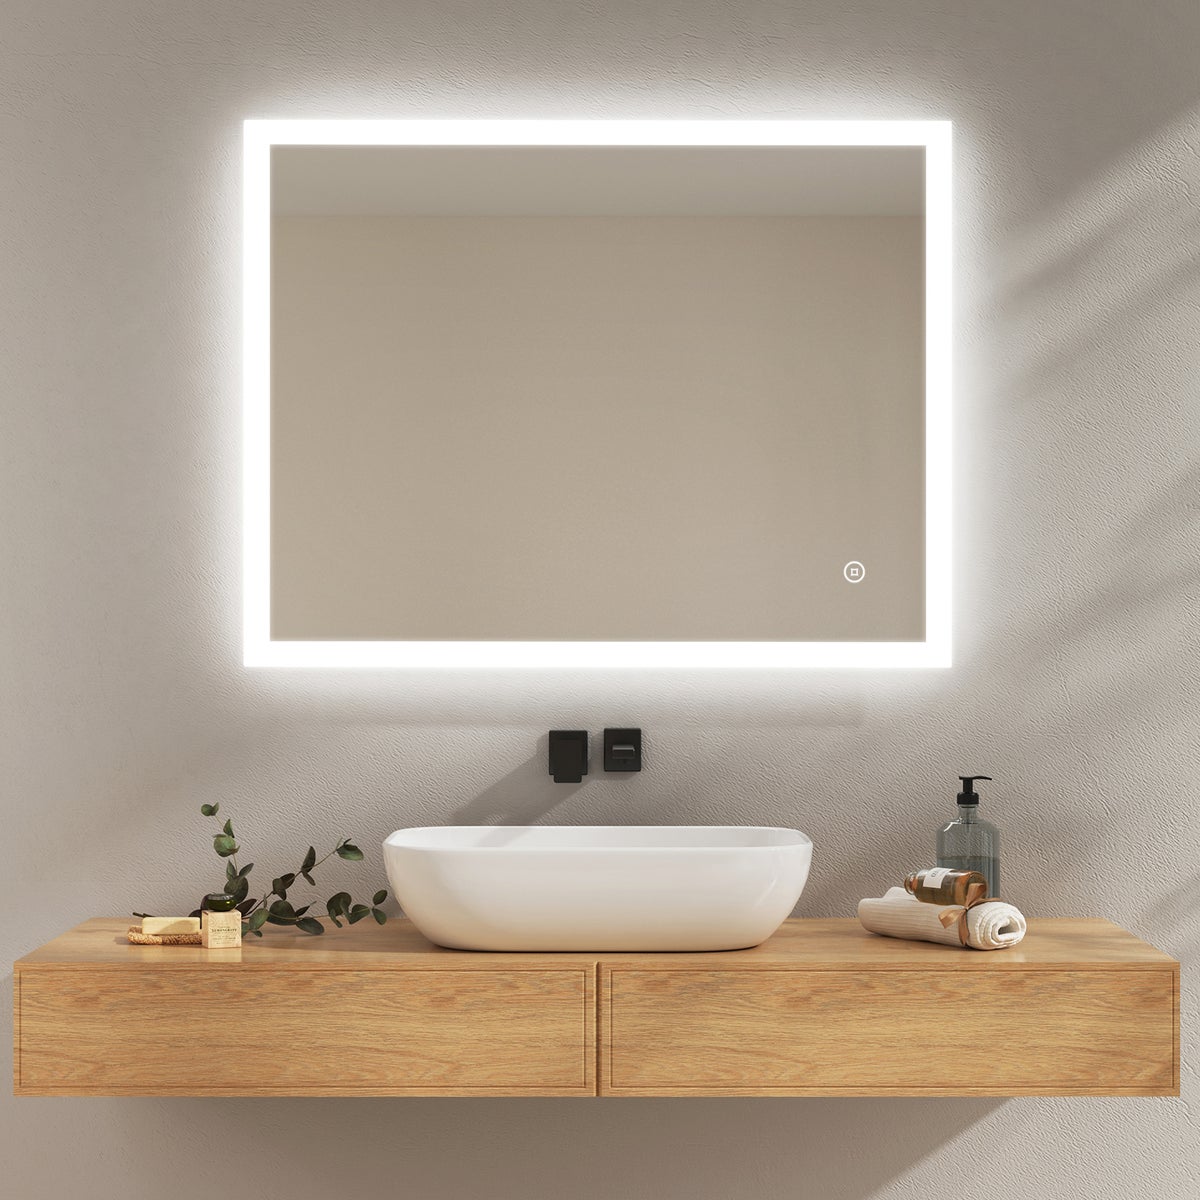 EMKE Badspiegel mit Beleuchtung, 90x70cm, Kaltweißes Licht, Beschlagfrei